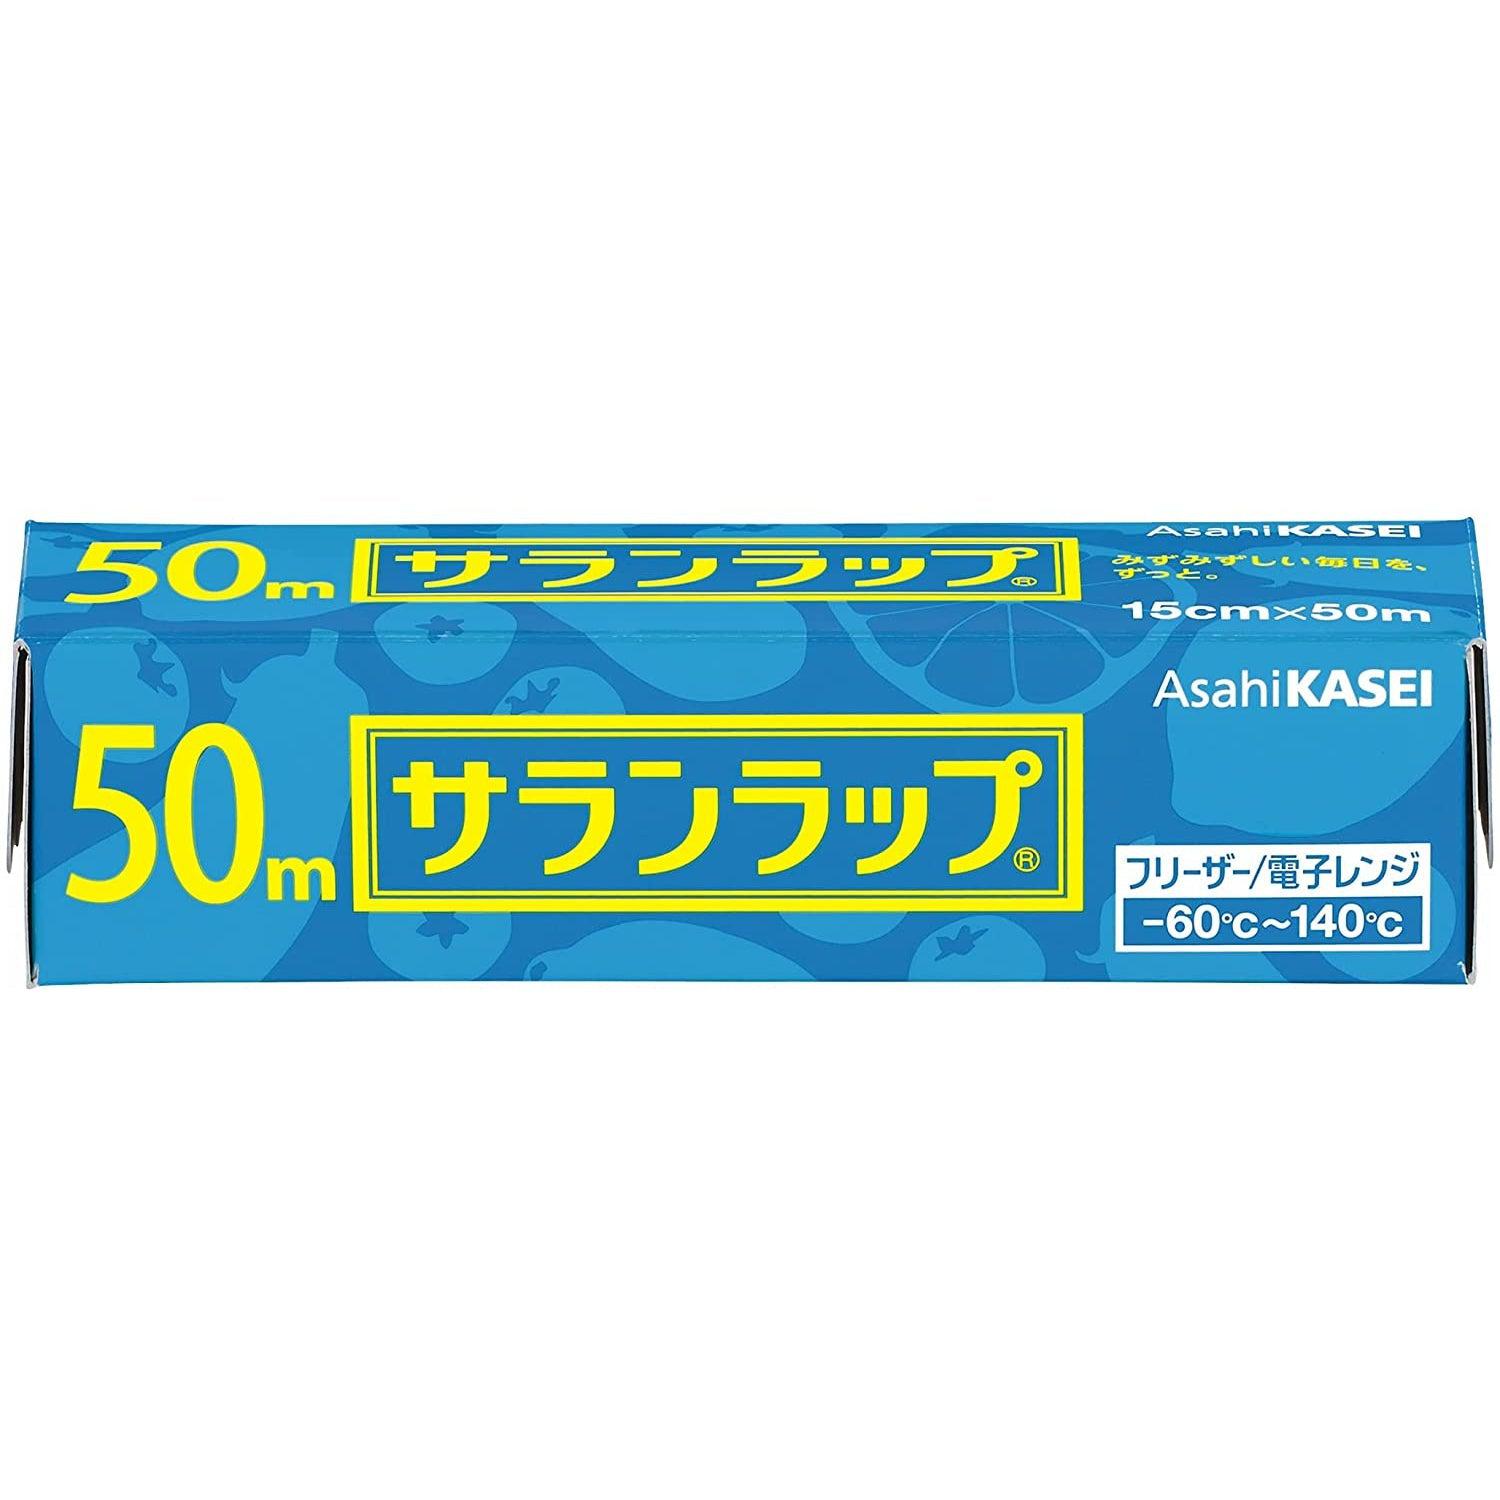 https://int.japanesetaste.com/cdn/shop/products/Asahi-Kasei-Saran-Wrap-Japanese-Plastic-Wrap-15cm-x-50m-Japanese-Taste.jpg?v=1674009995&width=5760